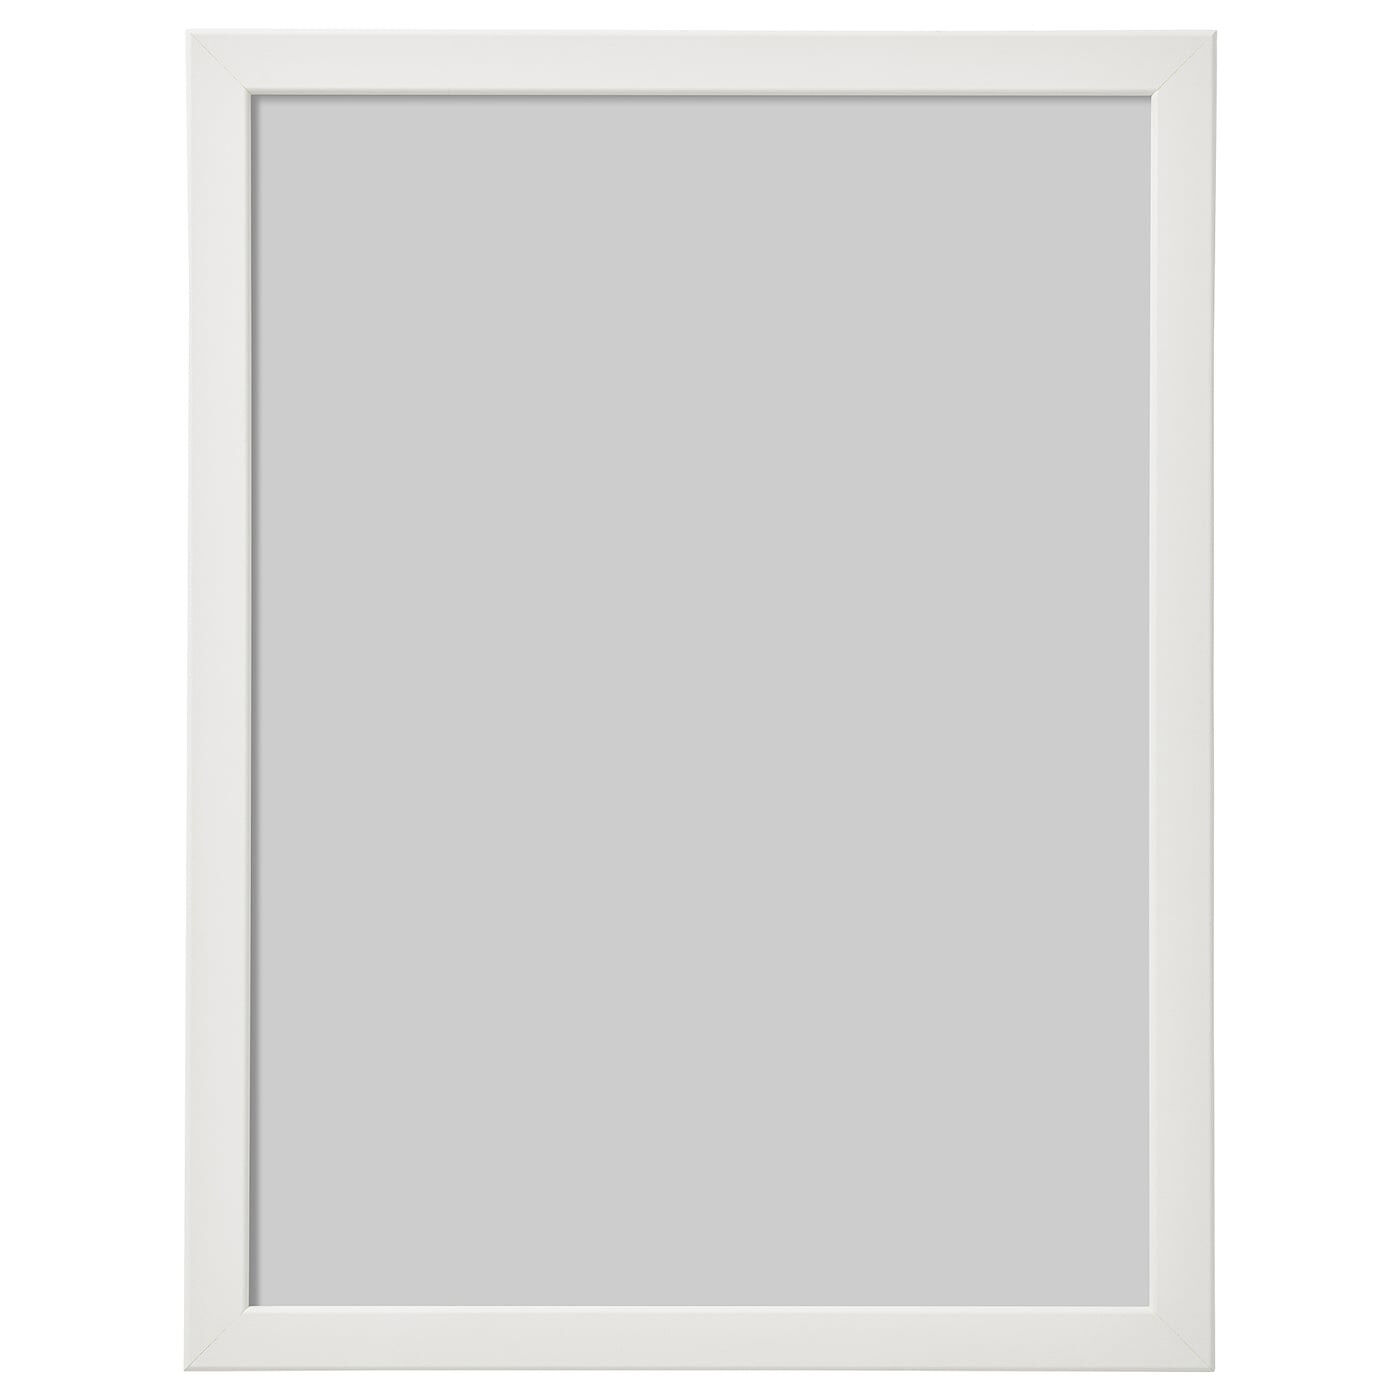 Basic képkeret fehér színű faliképekhez és poszterekhez A4 A3 méretben